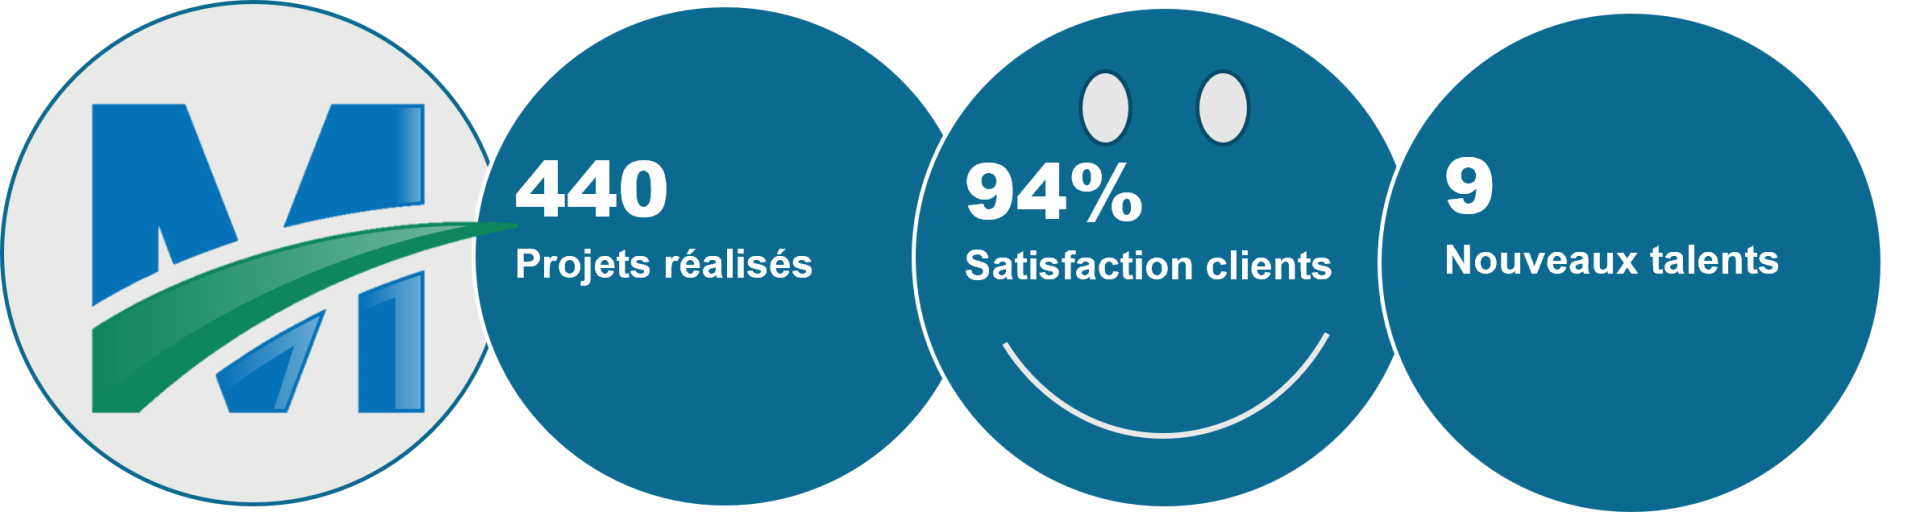 94% de clients satisfaits pour Iddea Image 1